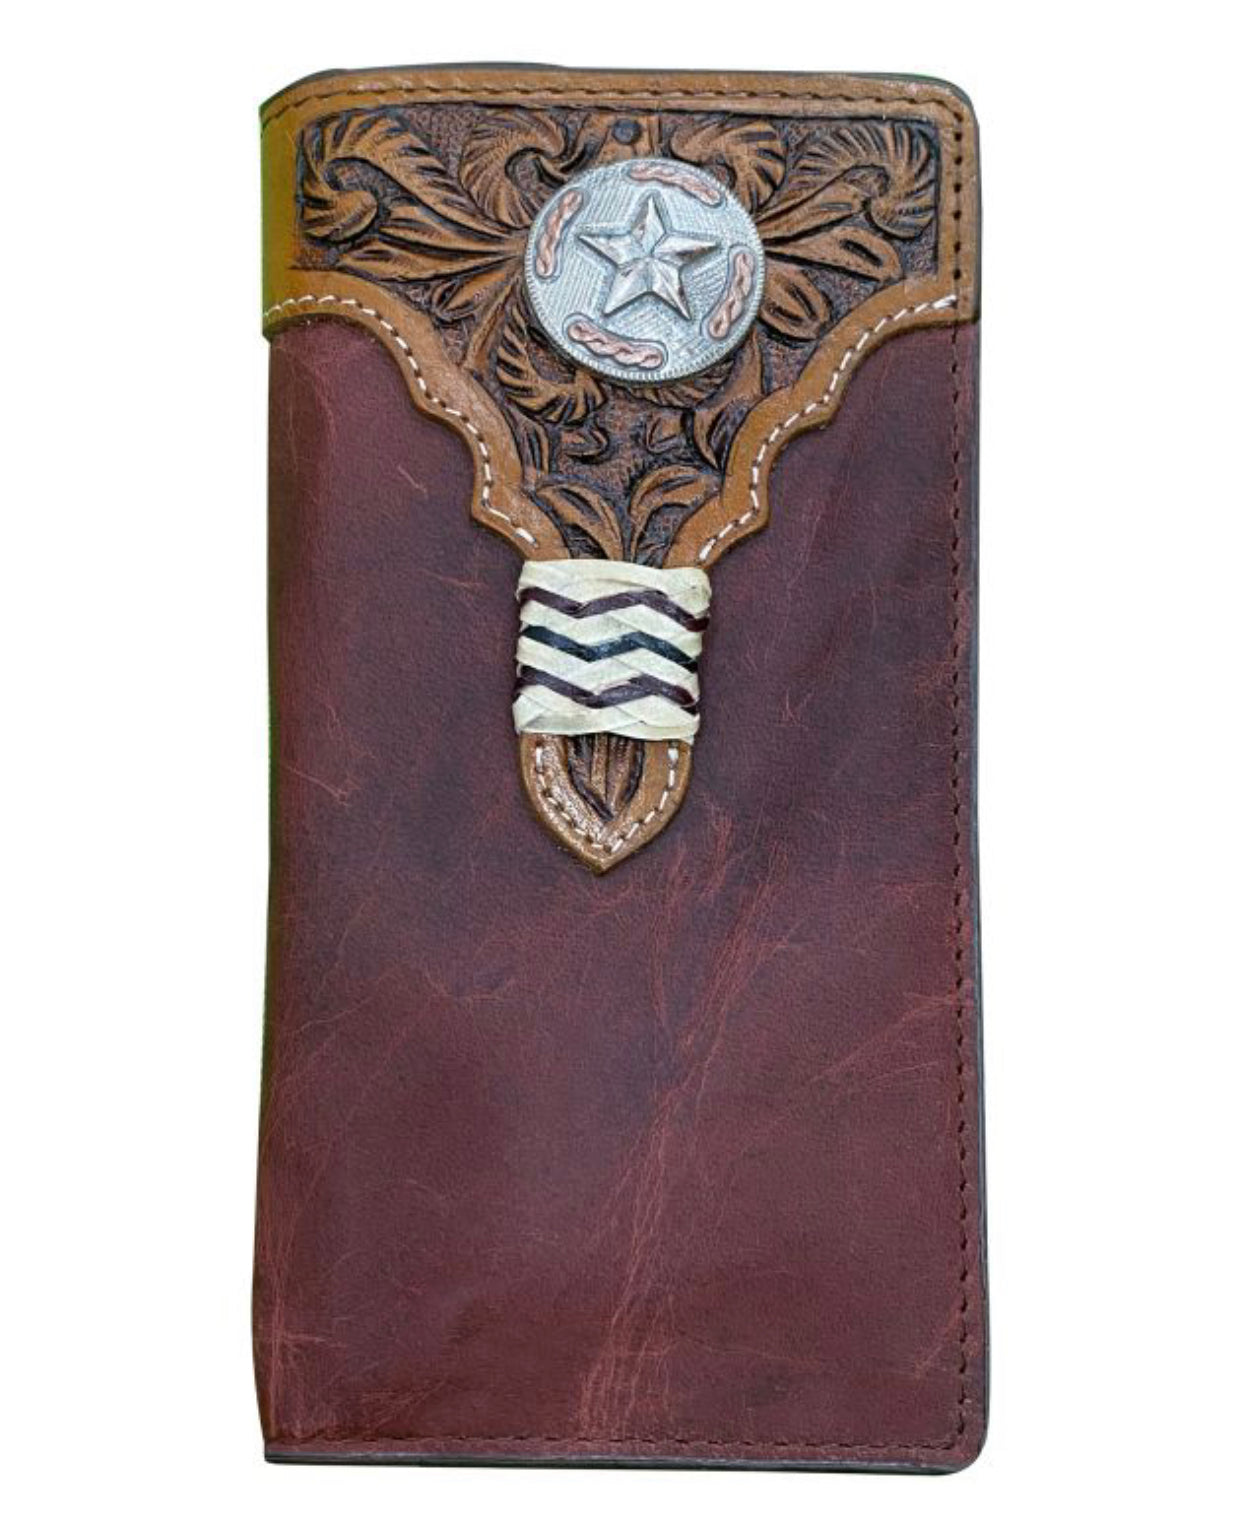 78173 -  Leather Bi-fold Wallet